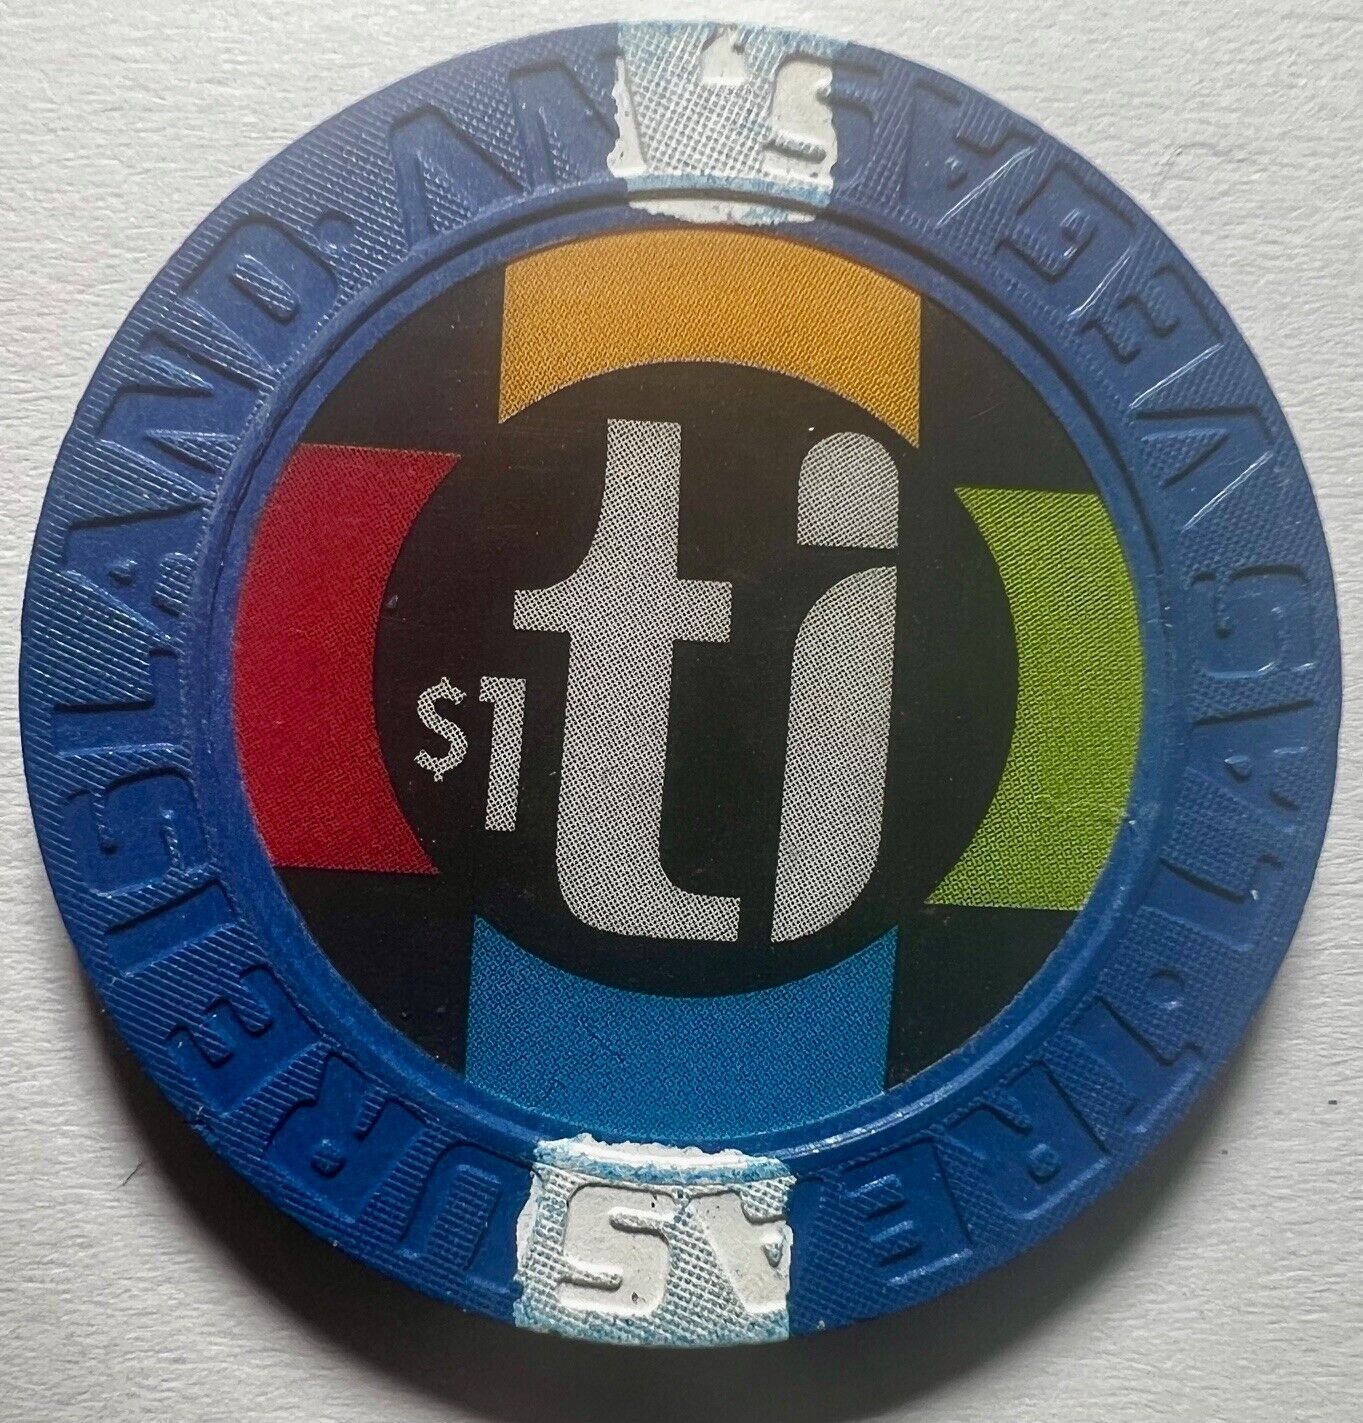 TI Treasure Island Casino Chip $1 - 2003 edition